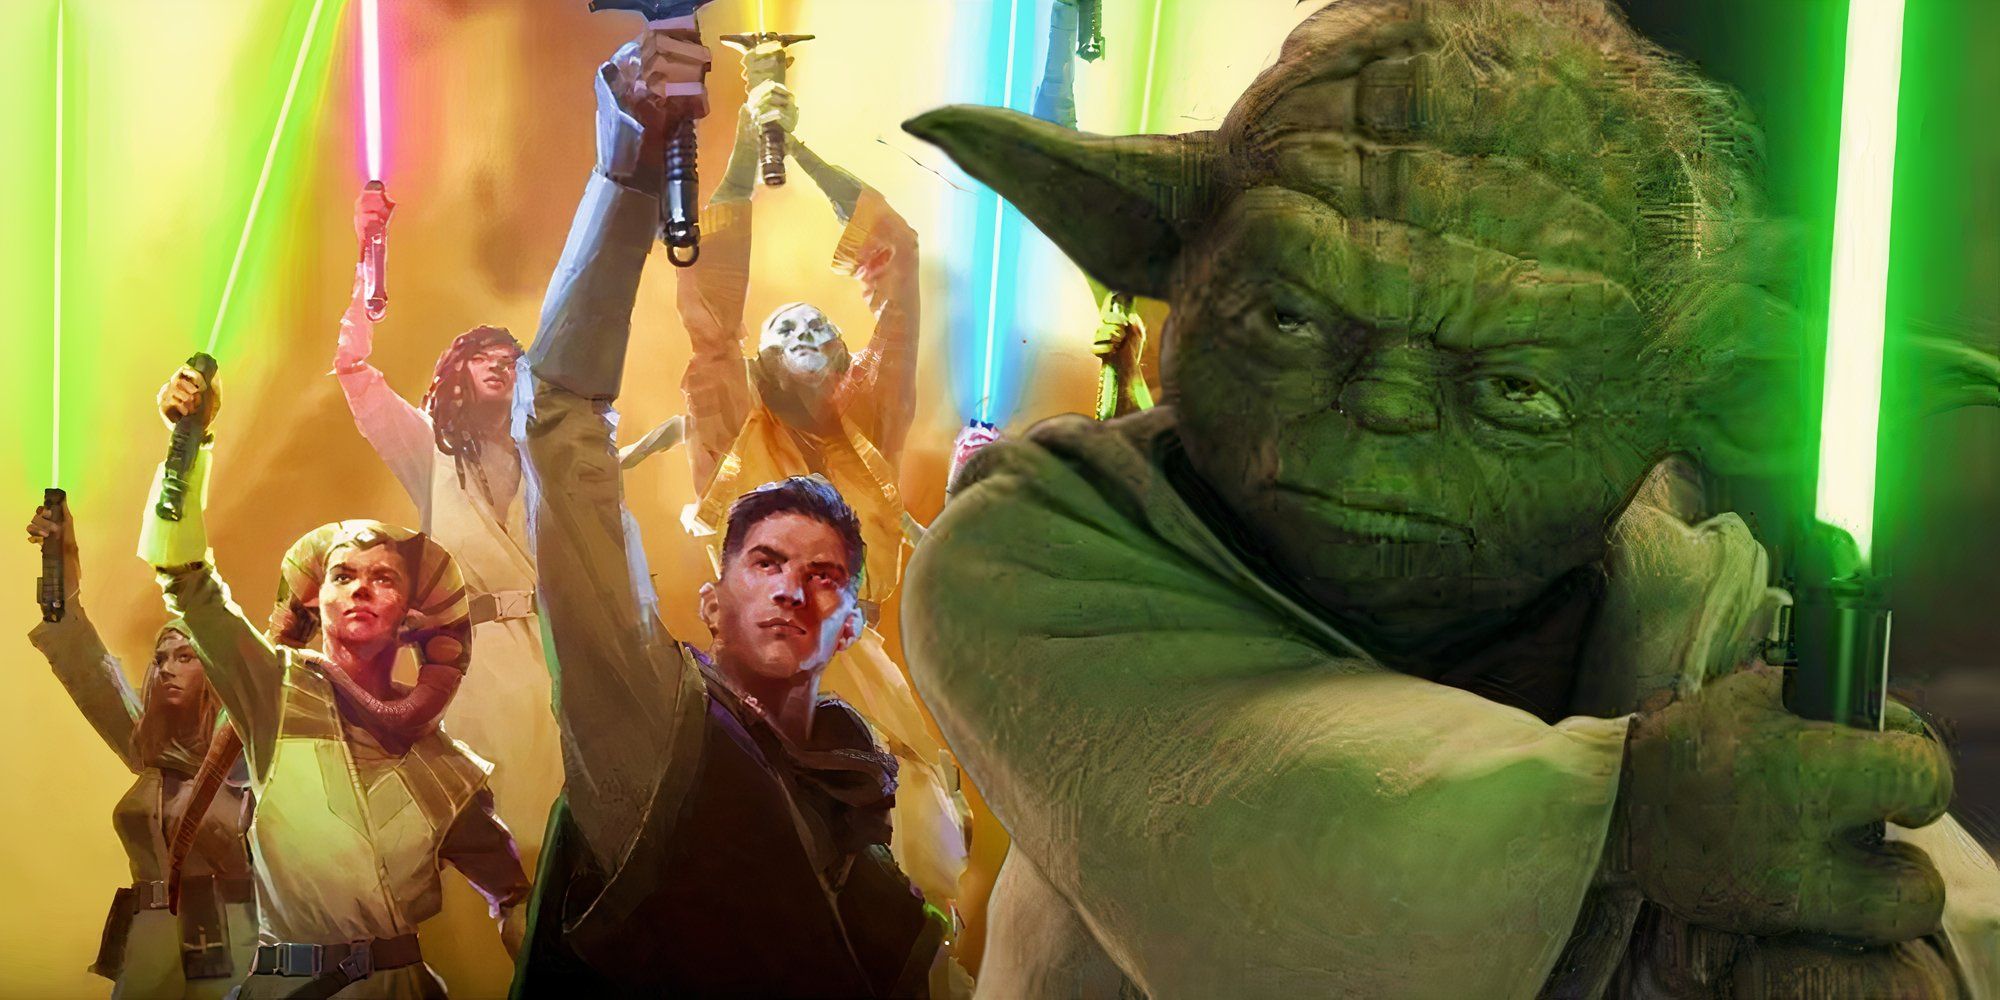 Jedi Wysokiej Republiki wznoszą swoje miecze świetlne obok Yody trzymającego swój zielony miecz świetlny